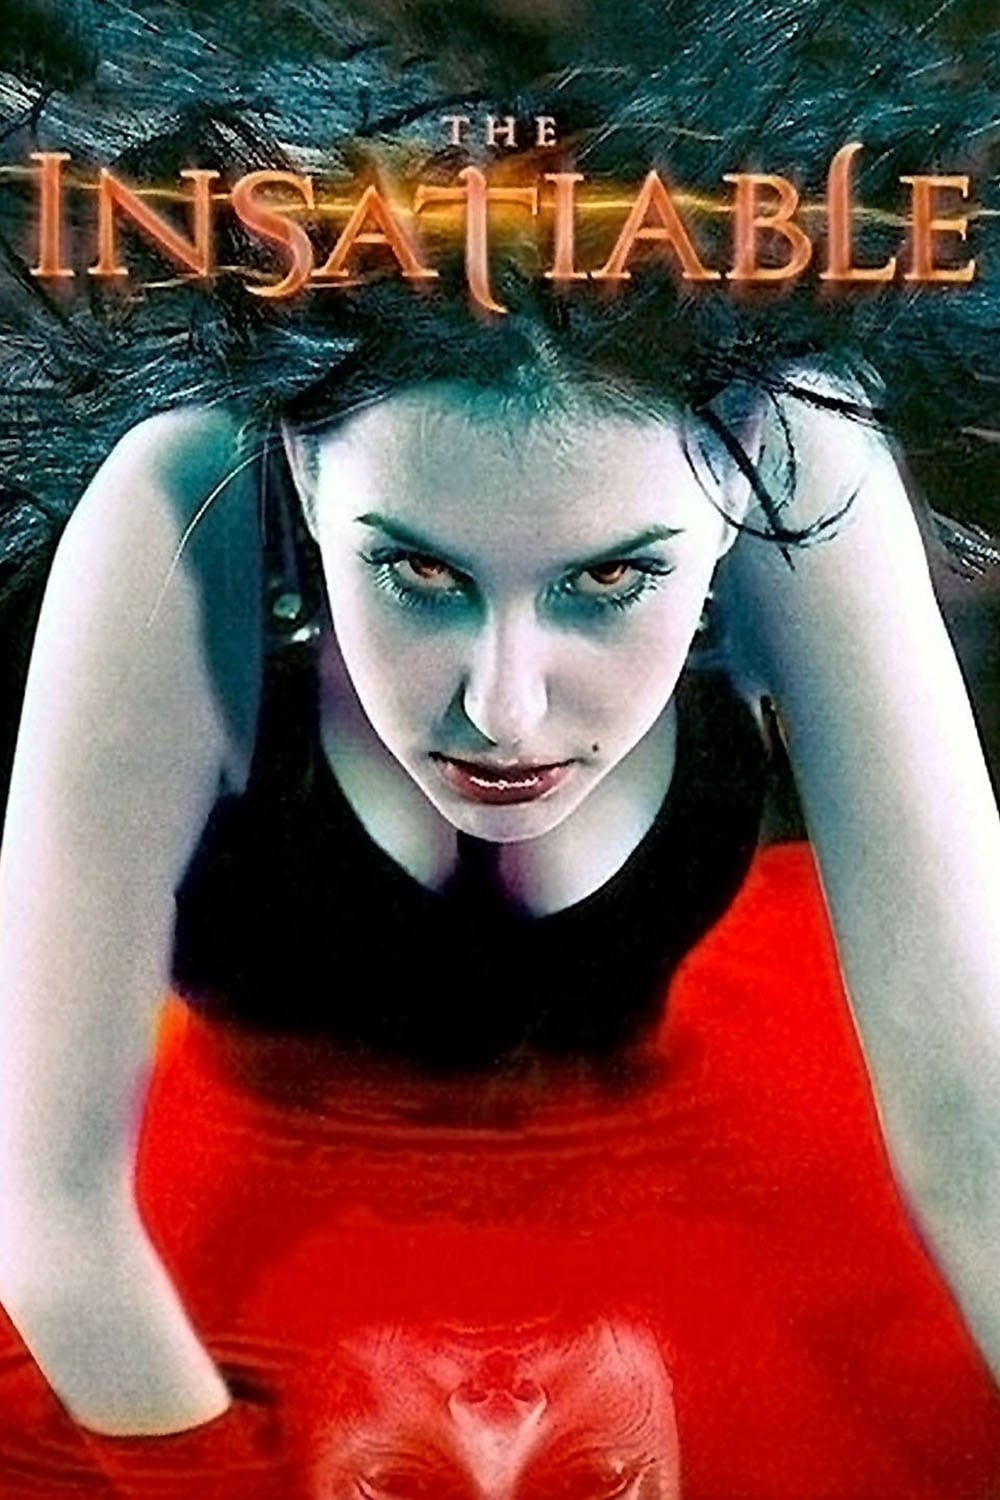 The Insatiable (2006)